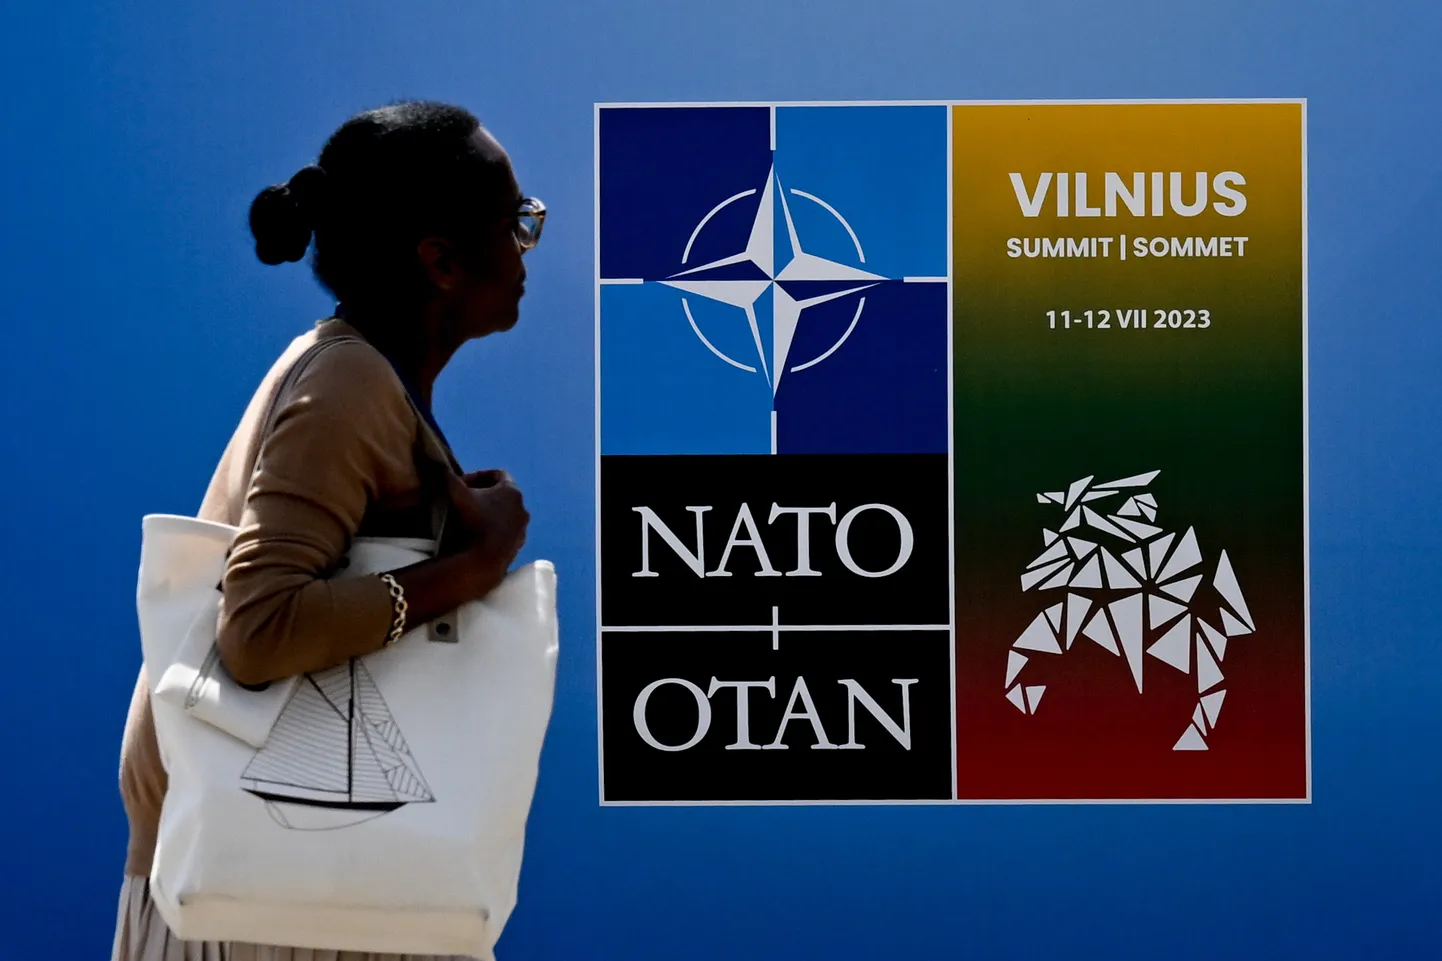 Vilniuse tippkohtumise logo selle toimumispaigaks olevas LITEXPO konverentsikeskuses.